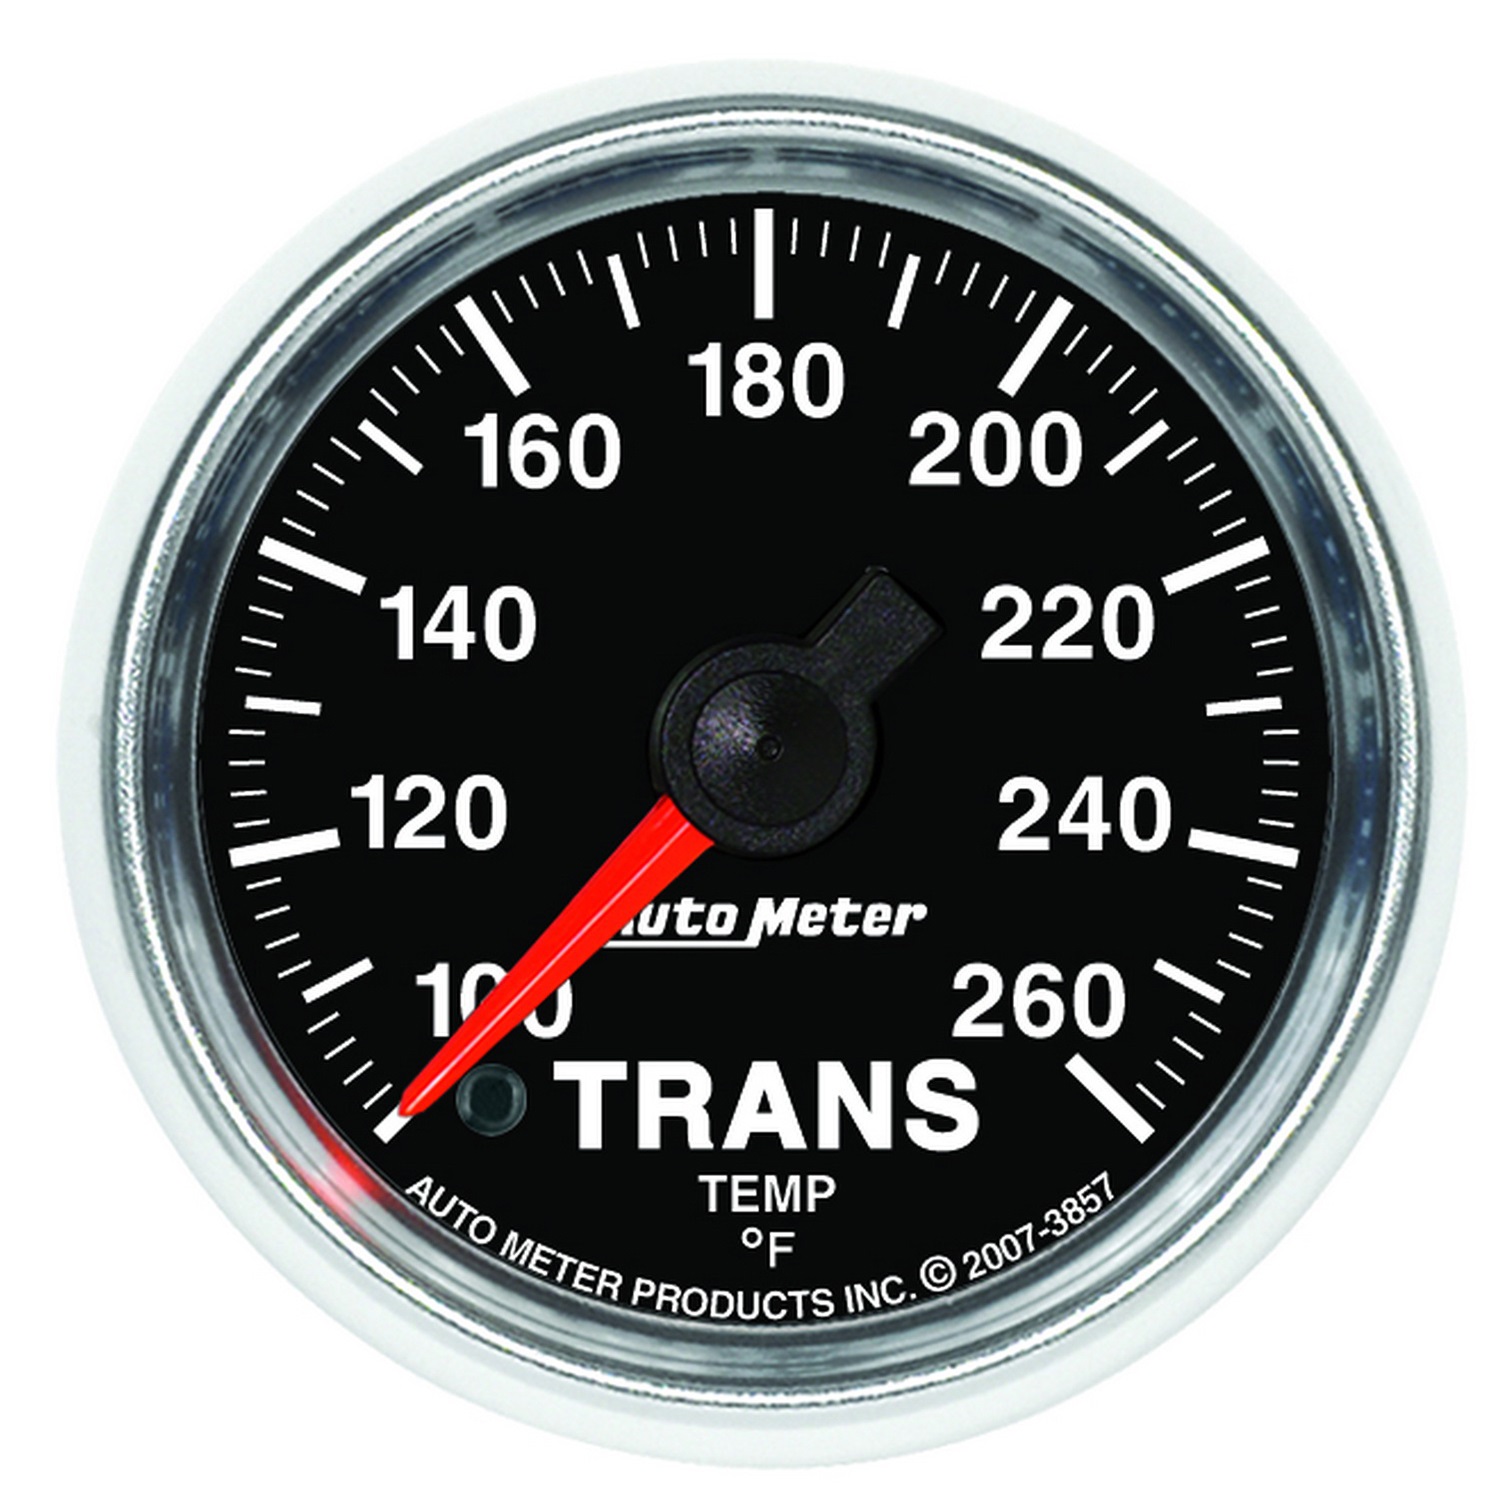 Auto Meter Auto Meter 3857 GS; Electric Transmission Temperature Gauge